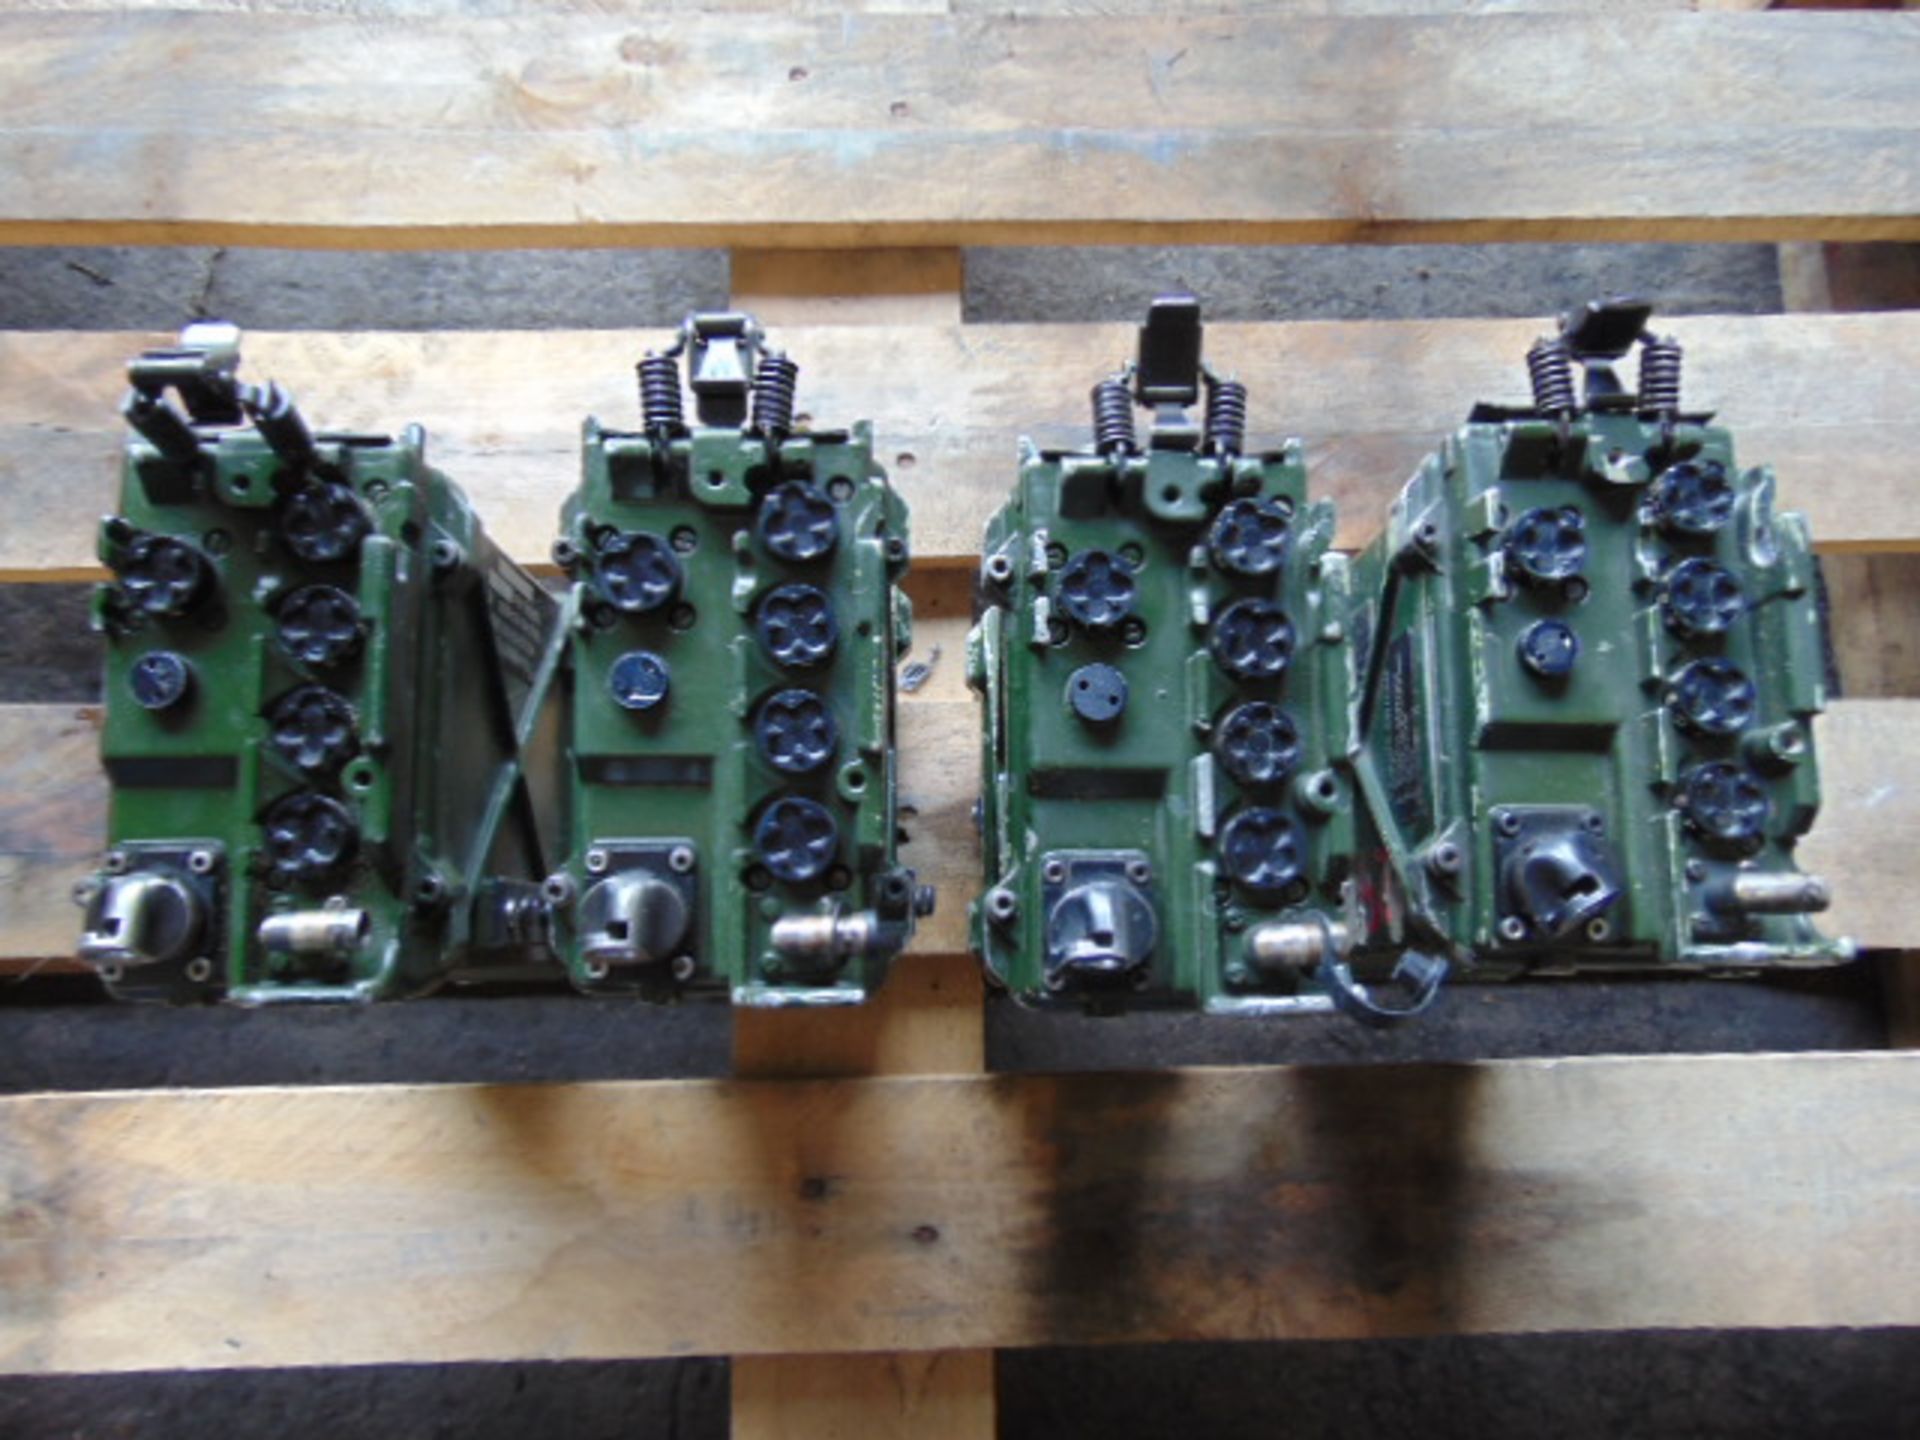 4 x Clansman RT- 351 Transmitter Receivers - Image 2 of 9